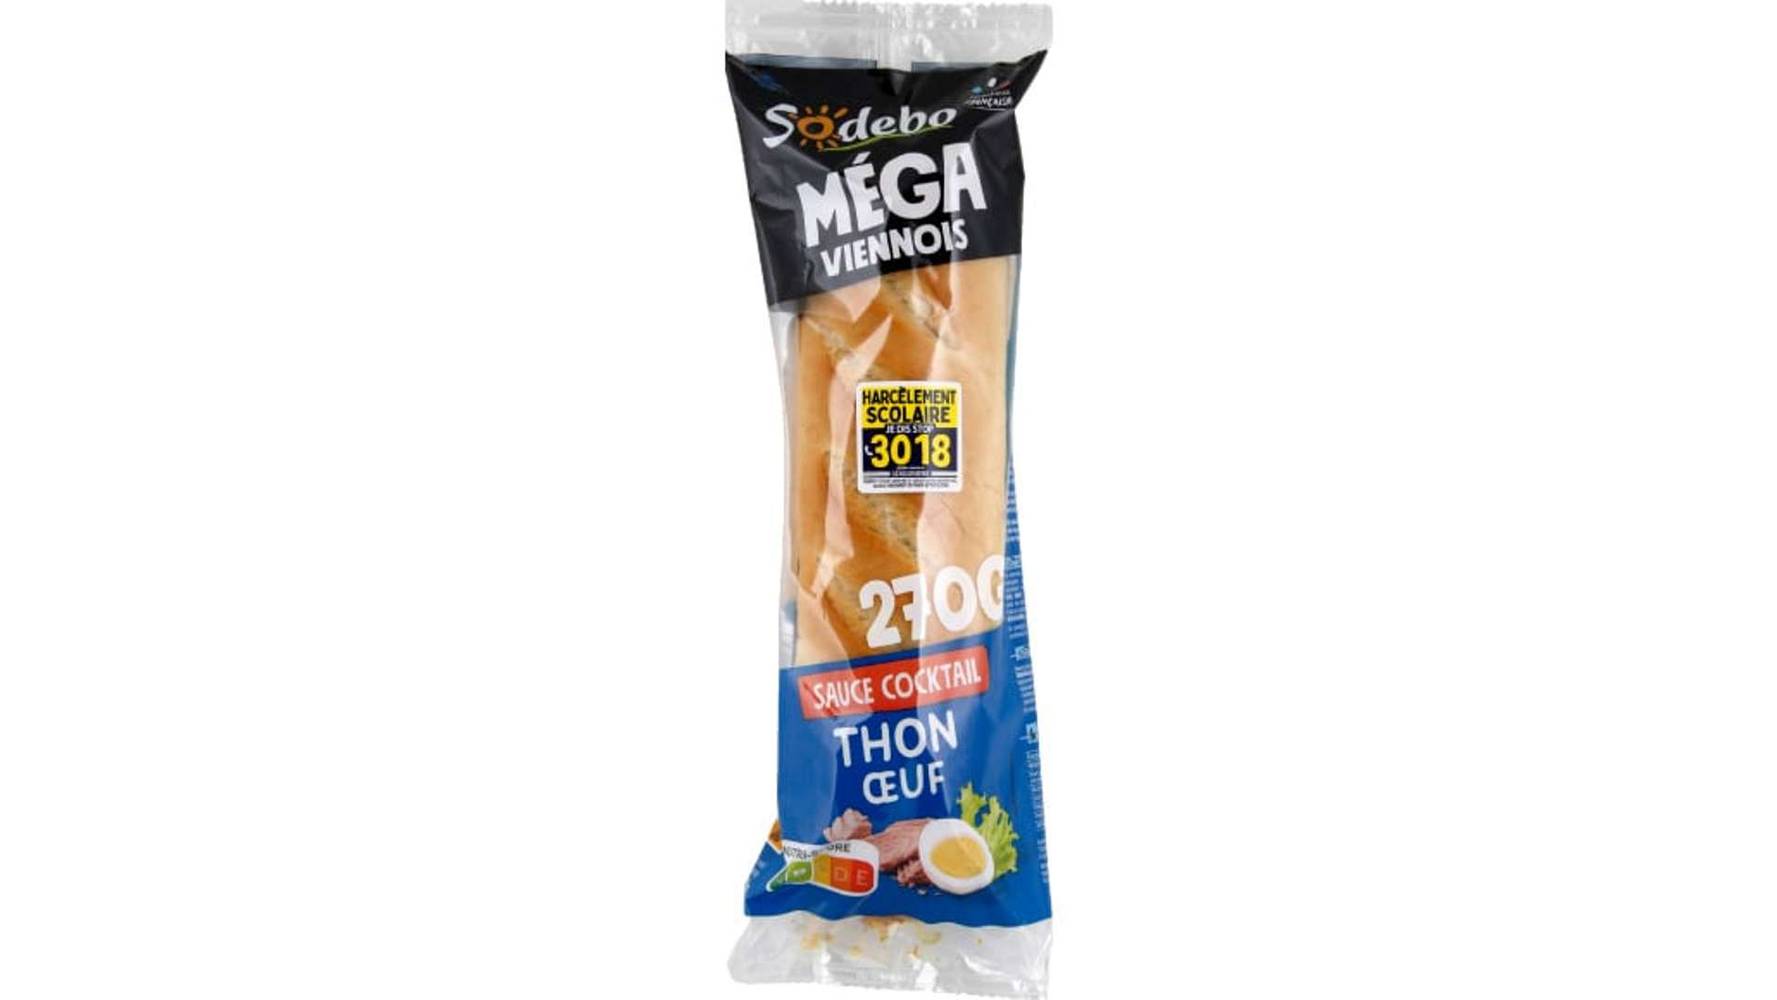 Sodebo Sandwich le mega baguette thon oeuf salade La barquette de 270g